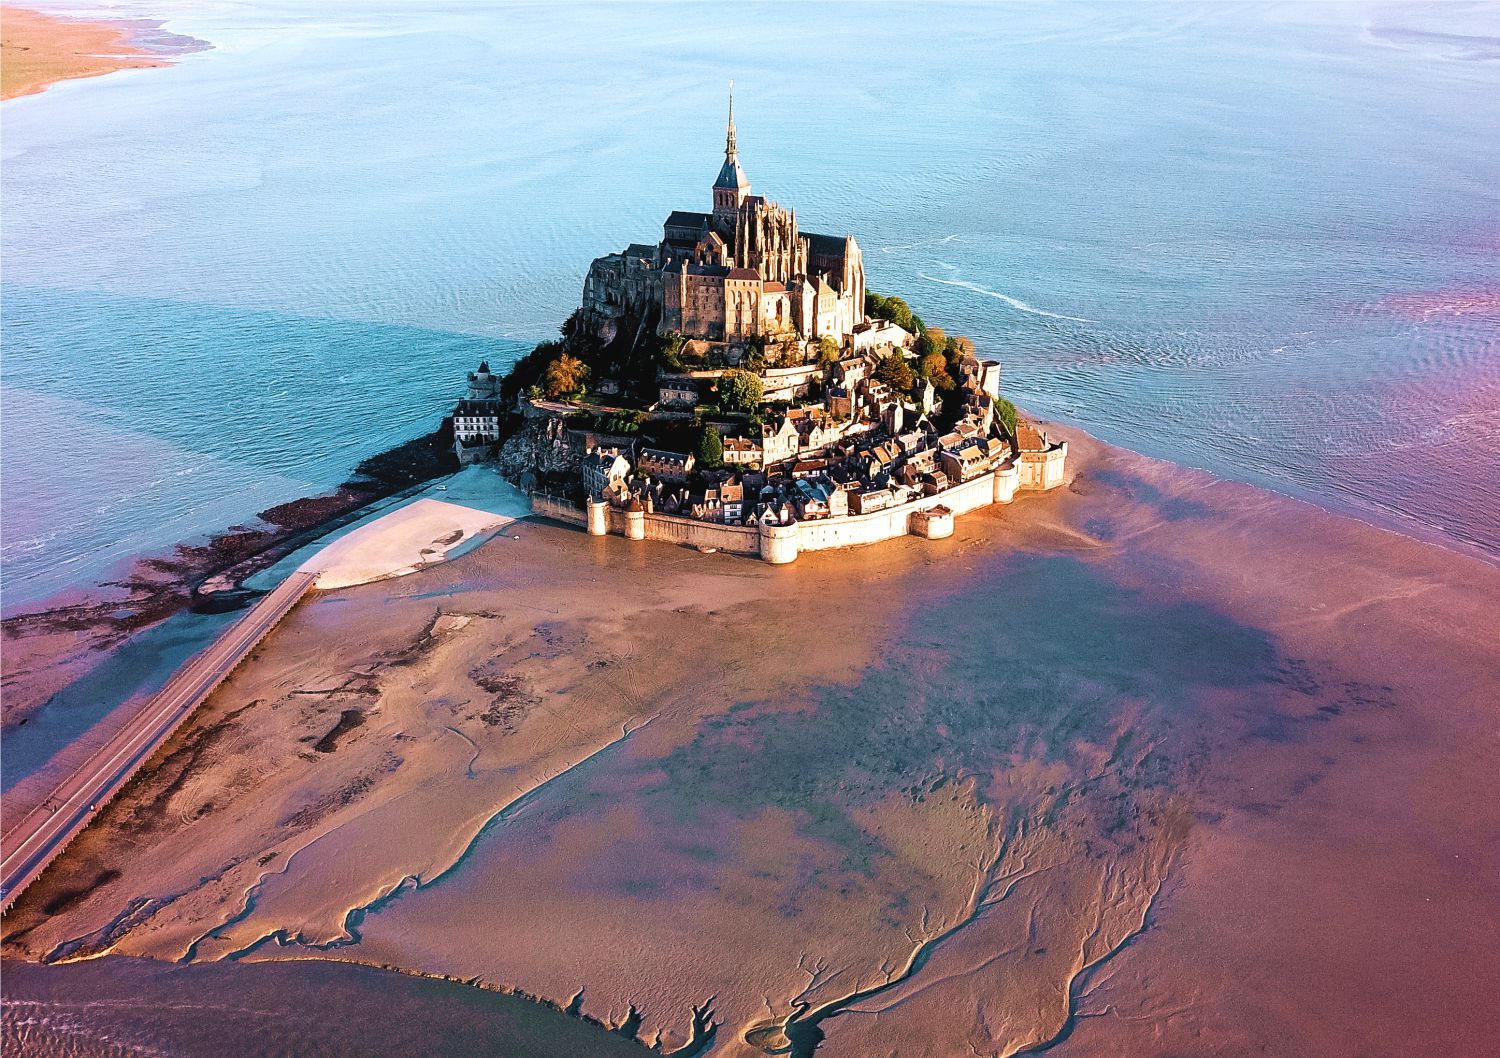 Khám phá Mont Saint Michel - biểu tượng của người Pháp về sự kiên cường và tự do  - Ảnh 12.